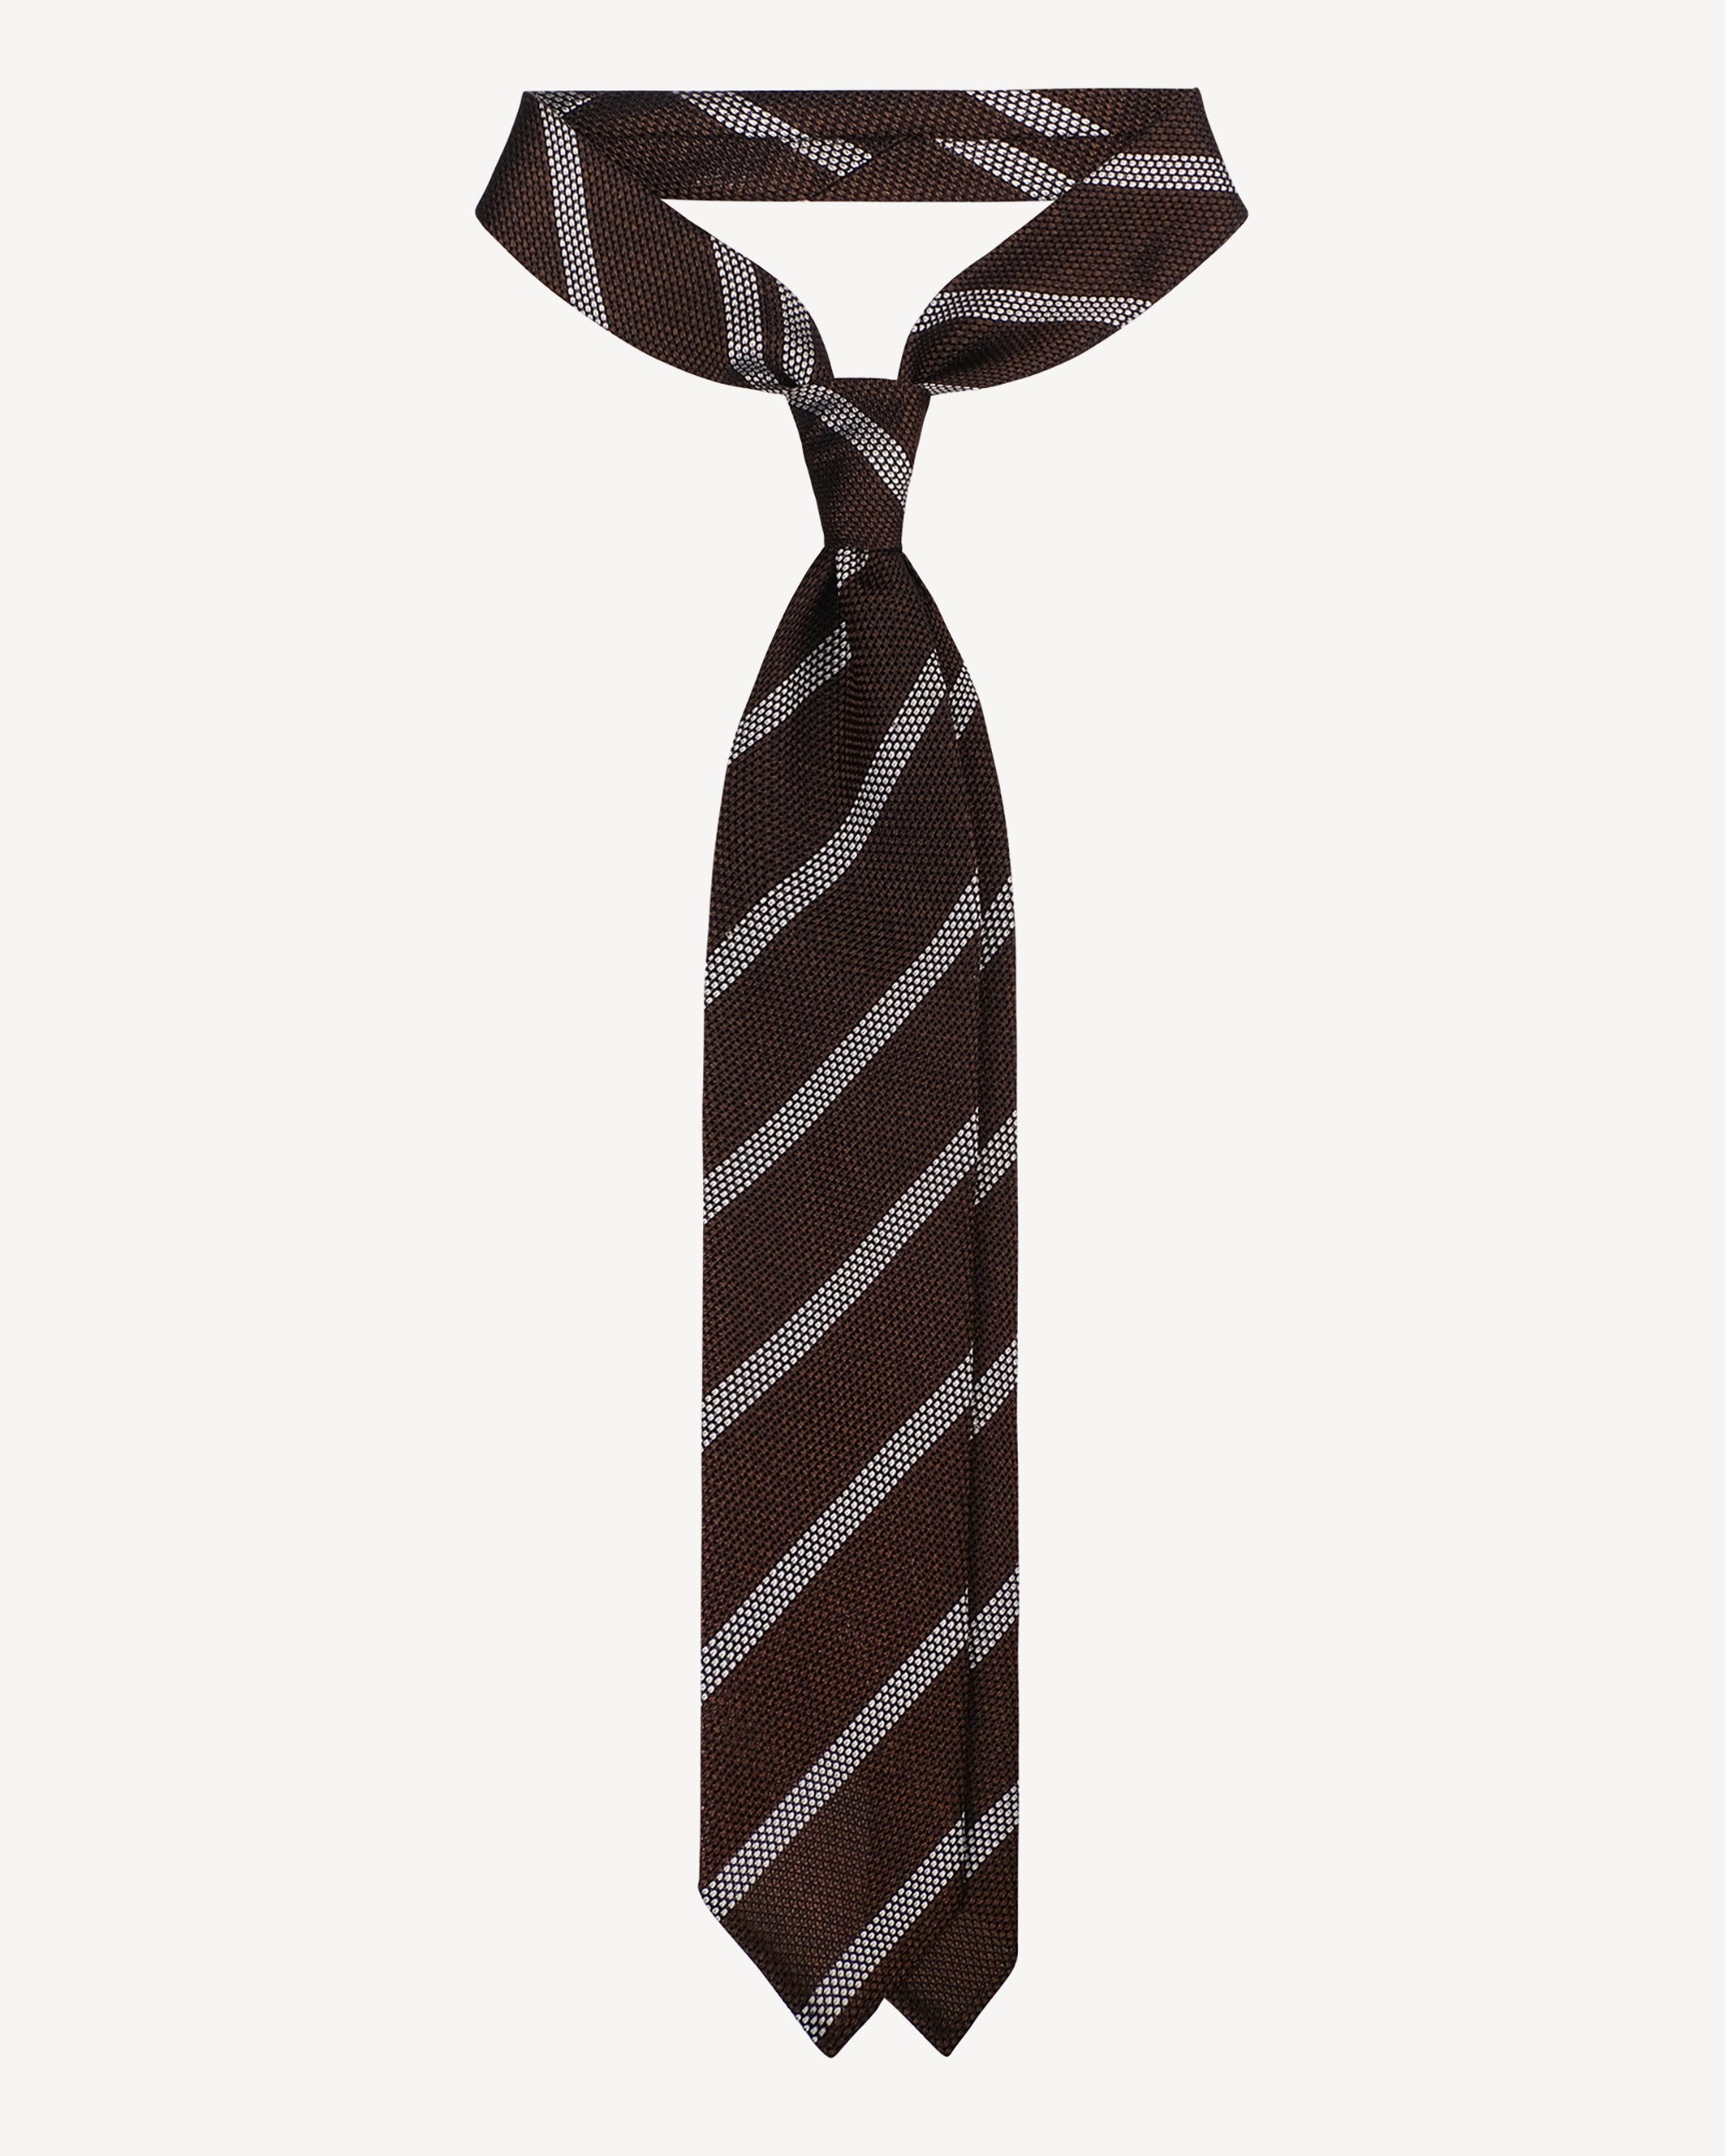 Krawatte in braun-weiß gestreift